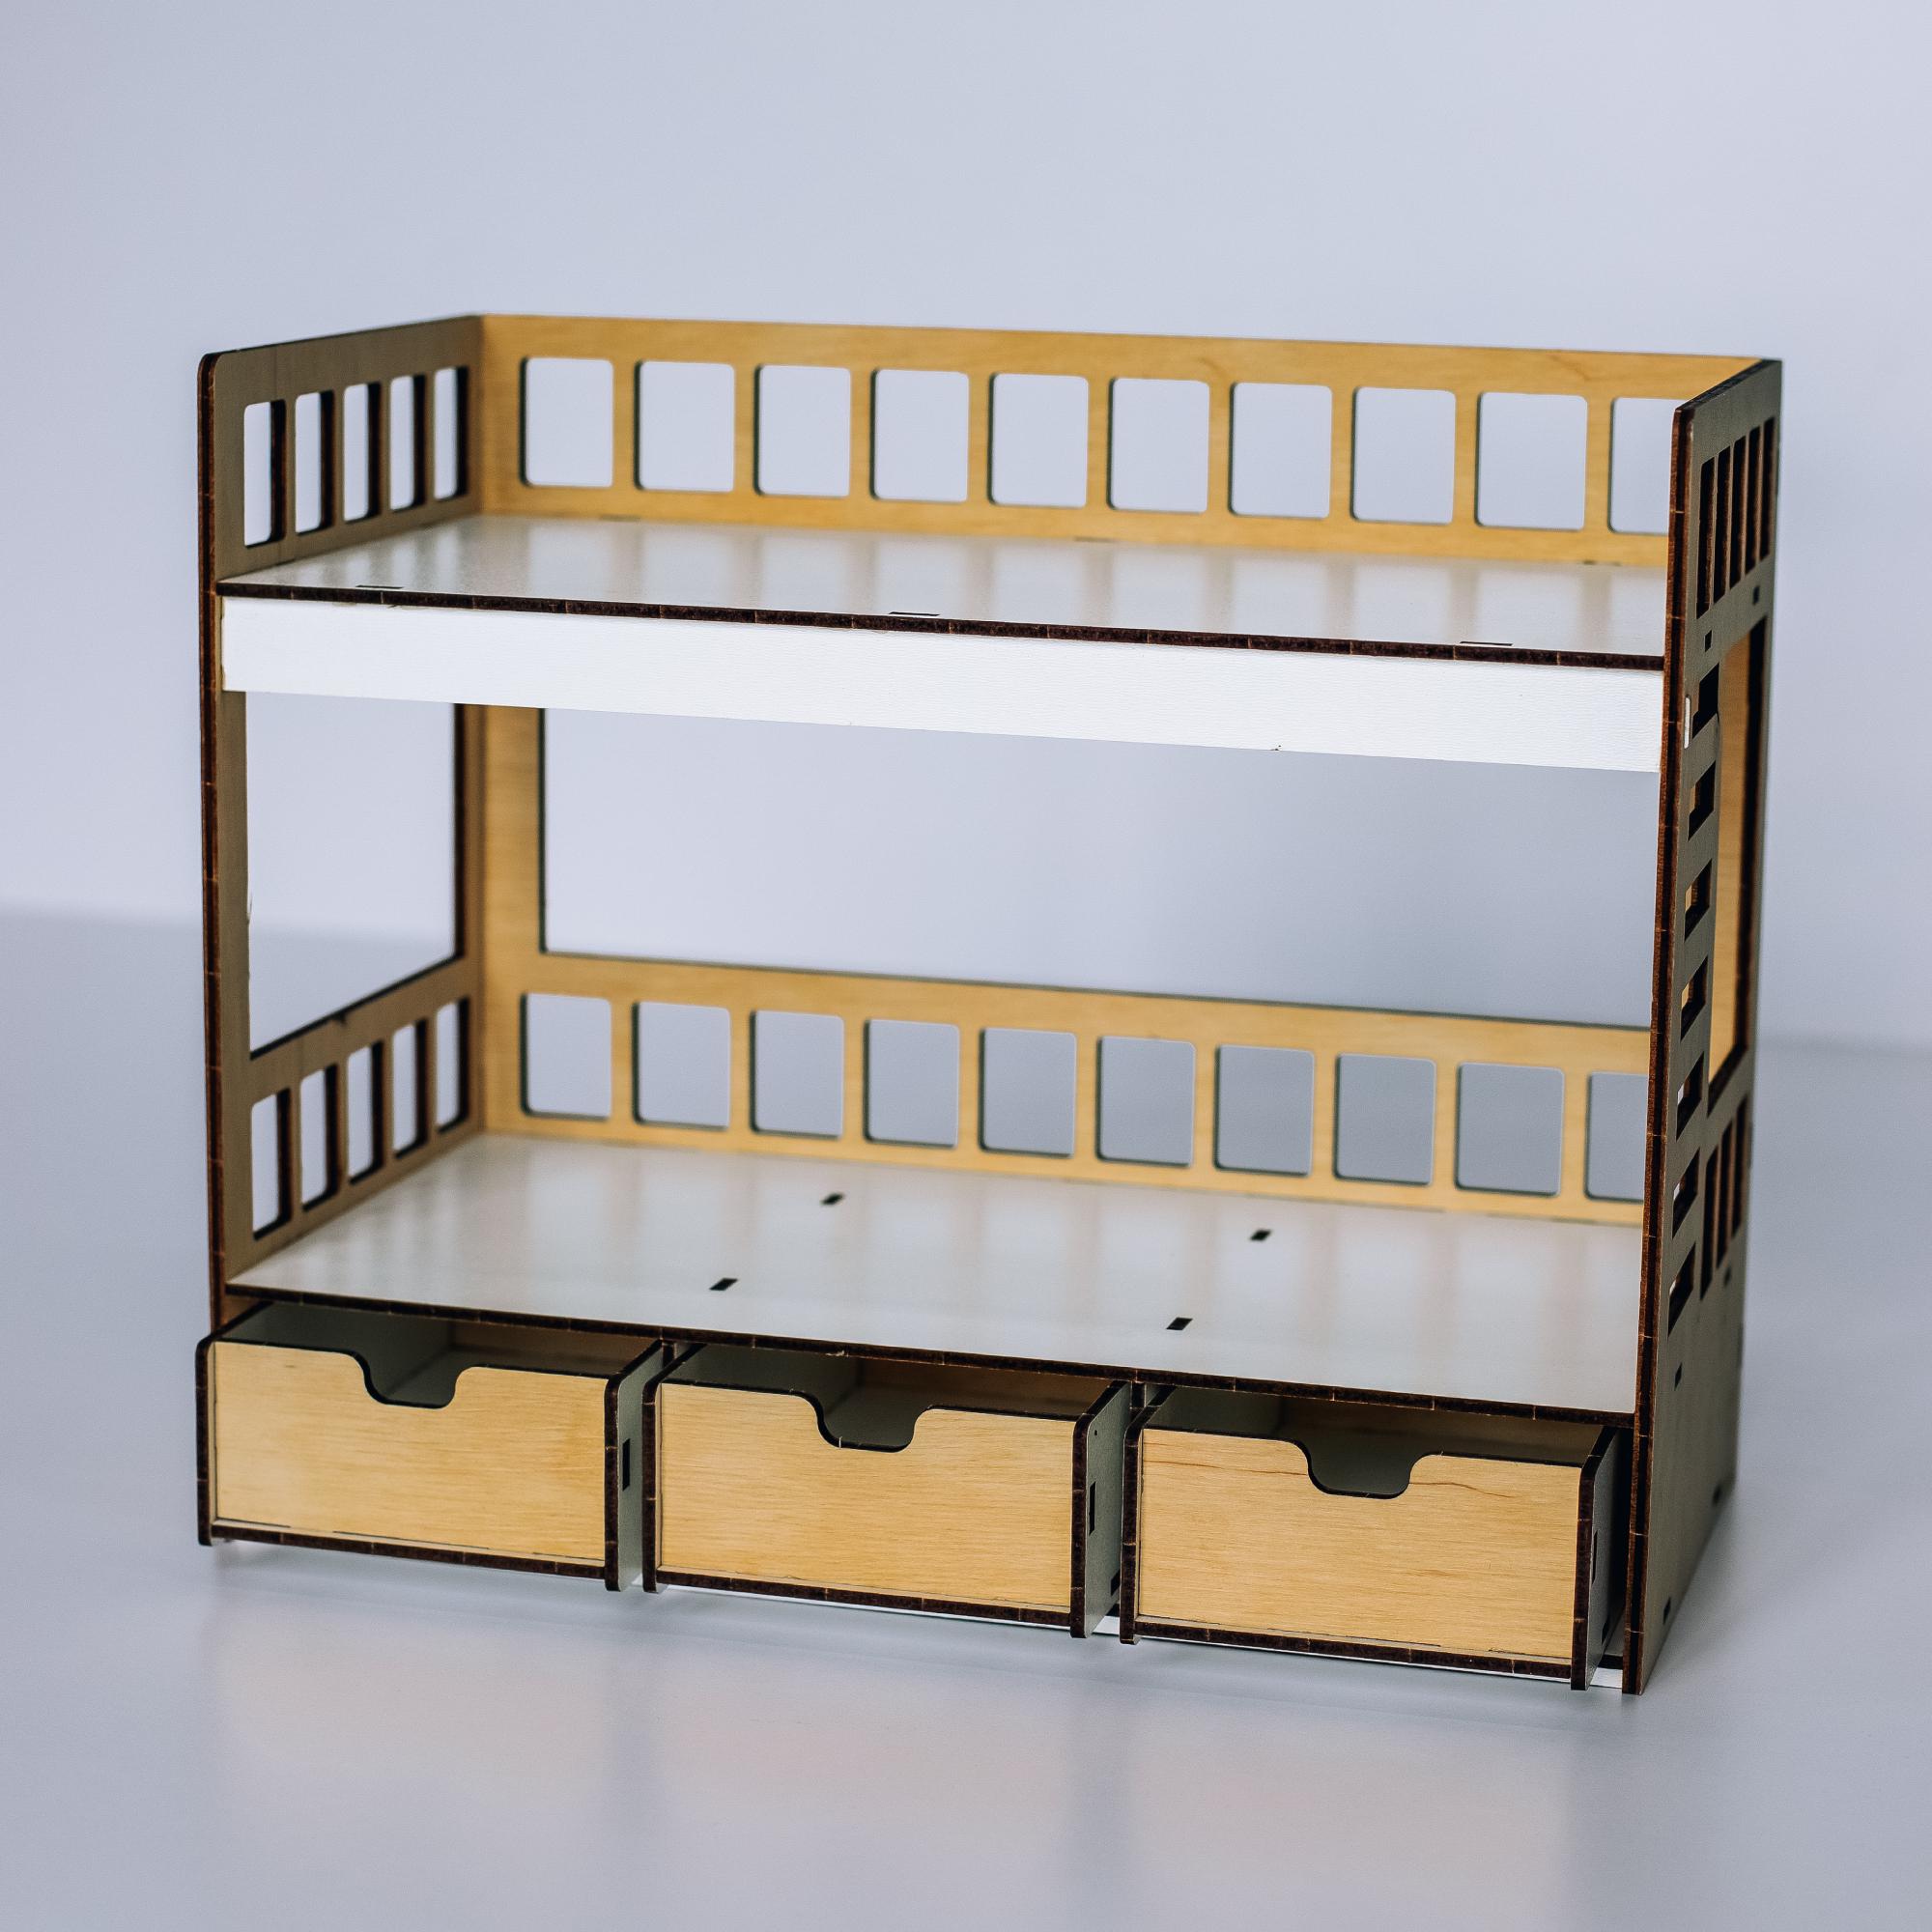 Кукольная мебель Злата, кровать двухъярусная 15 см отзывы